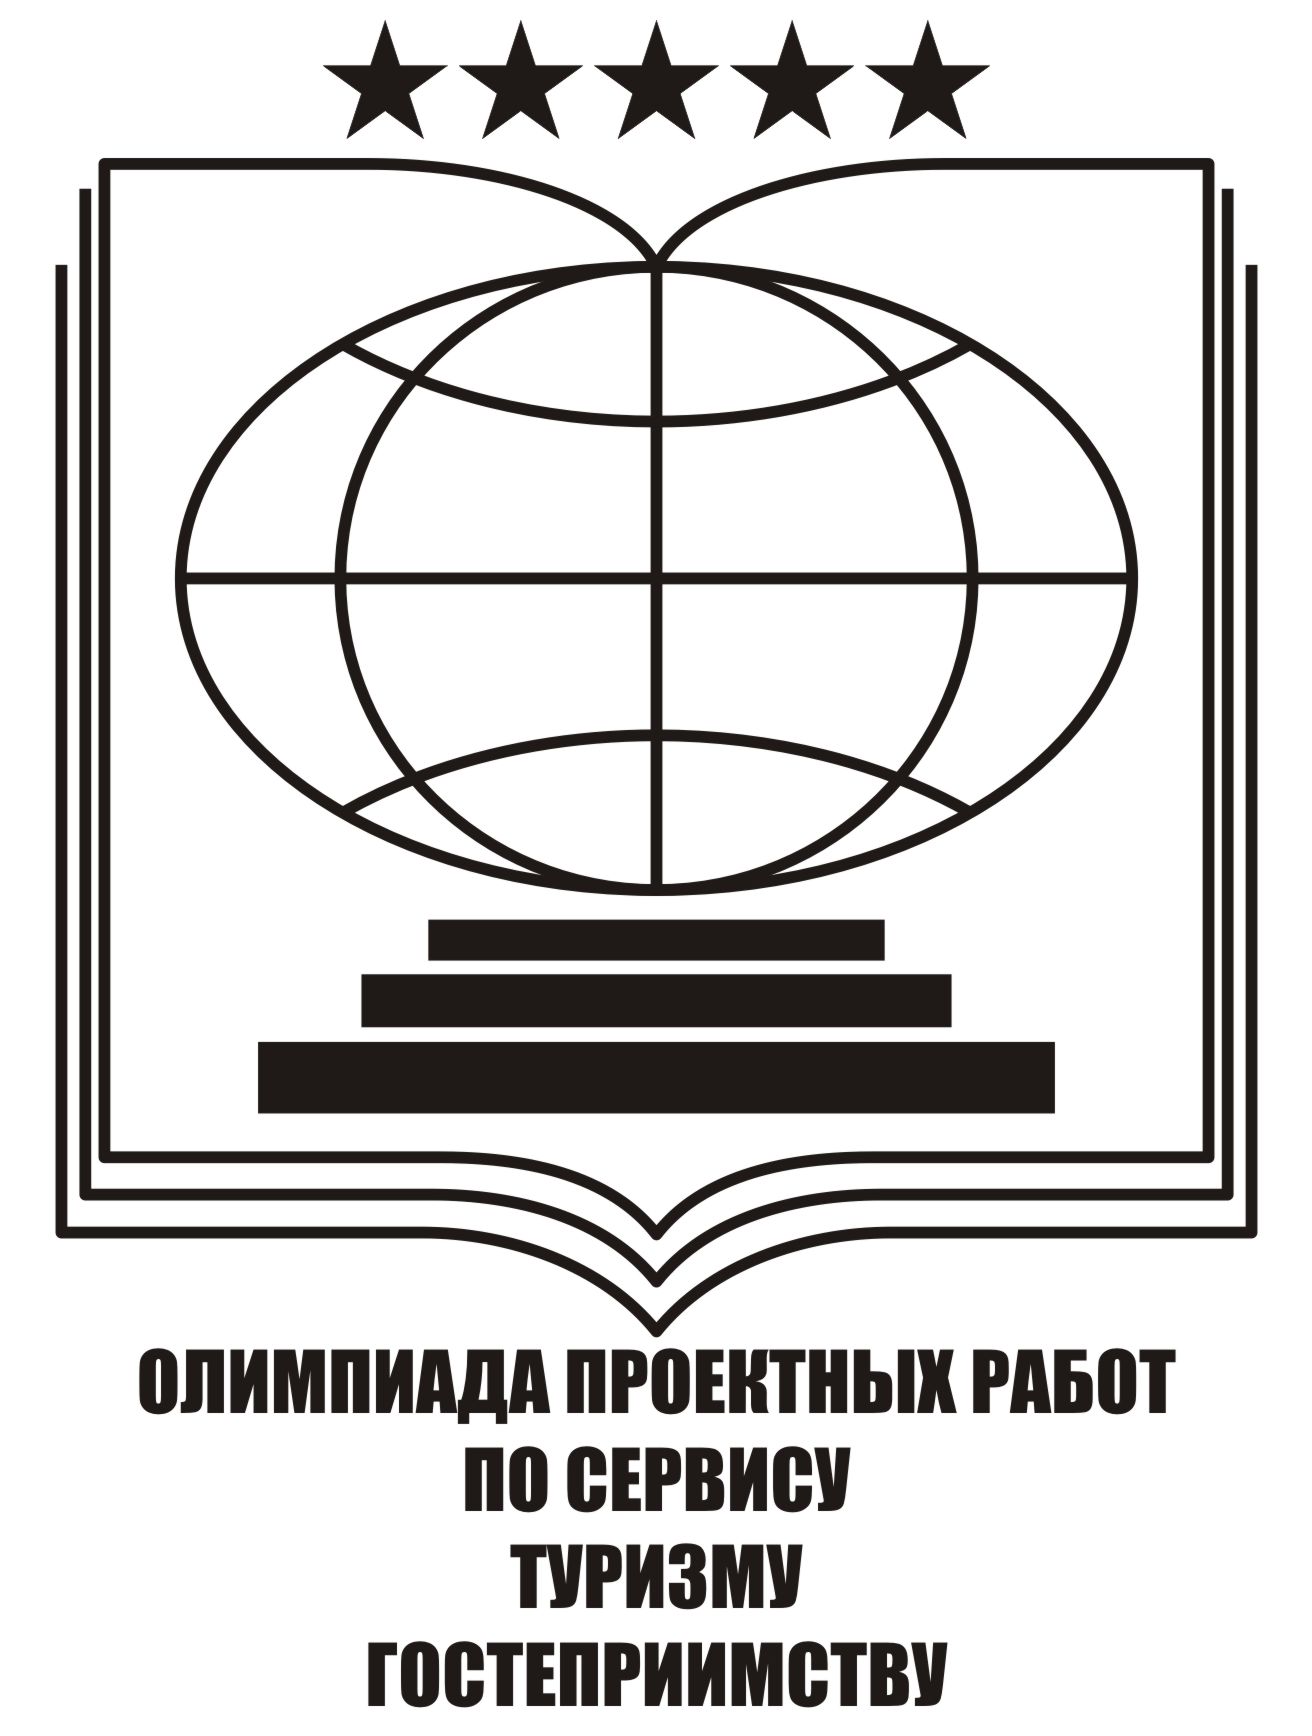 Логотип олимп ды проектных работ